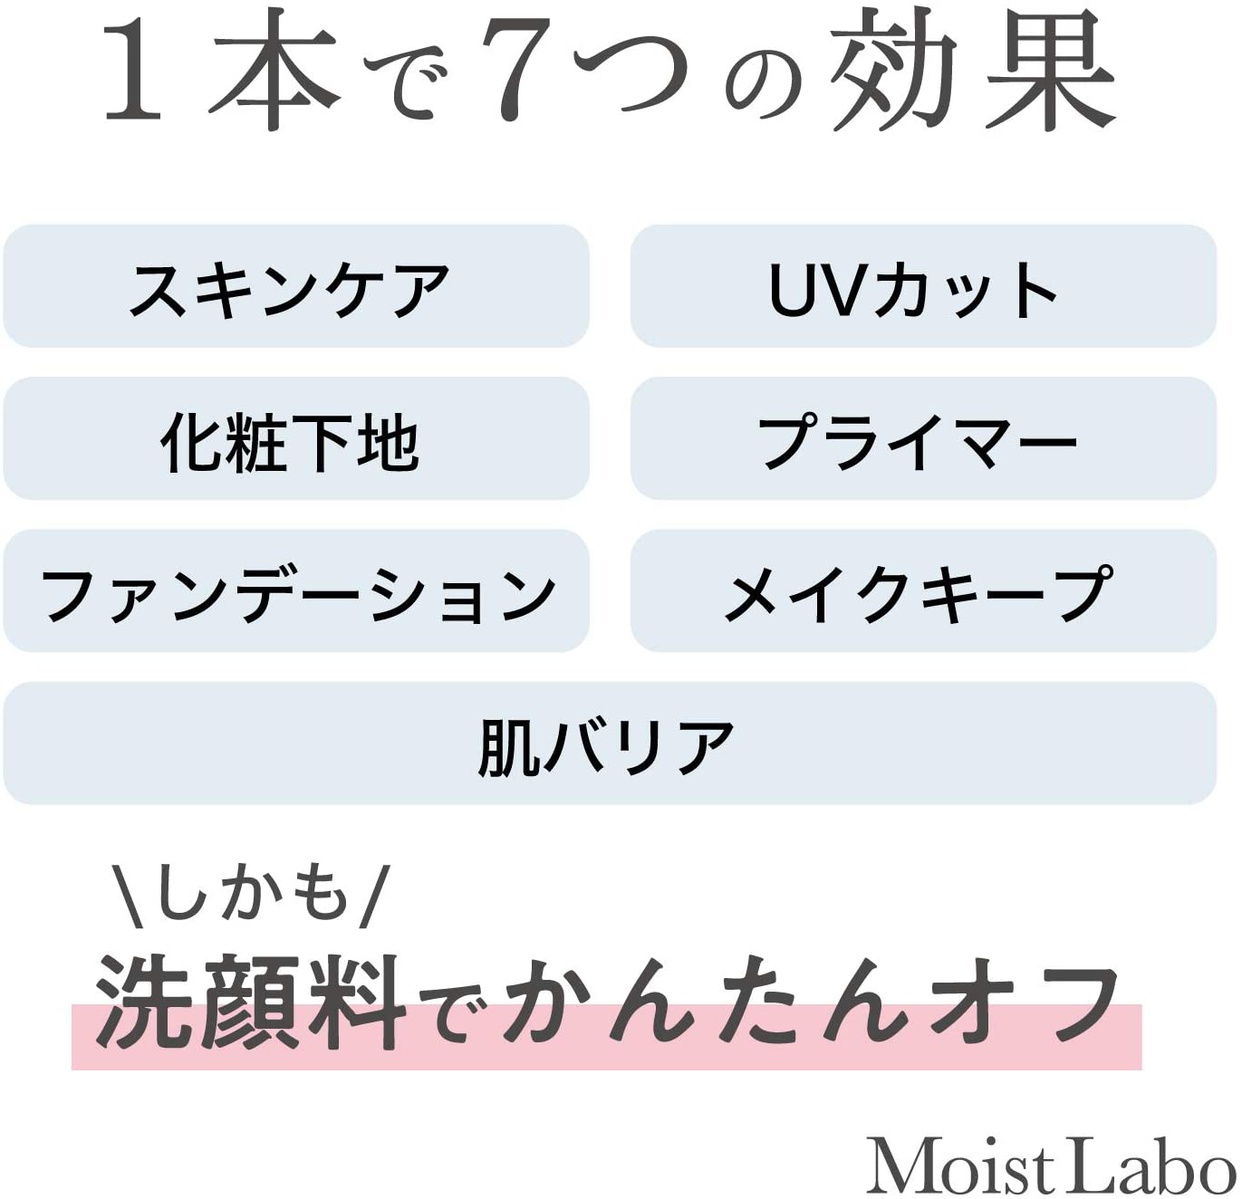 Moist Labo(モイストラボ) 透明BBクリームの商品画像サムネ3 